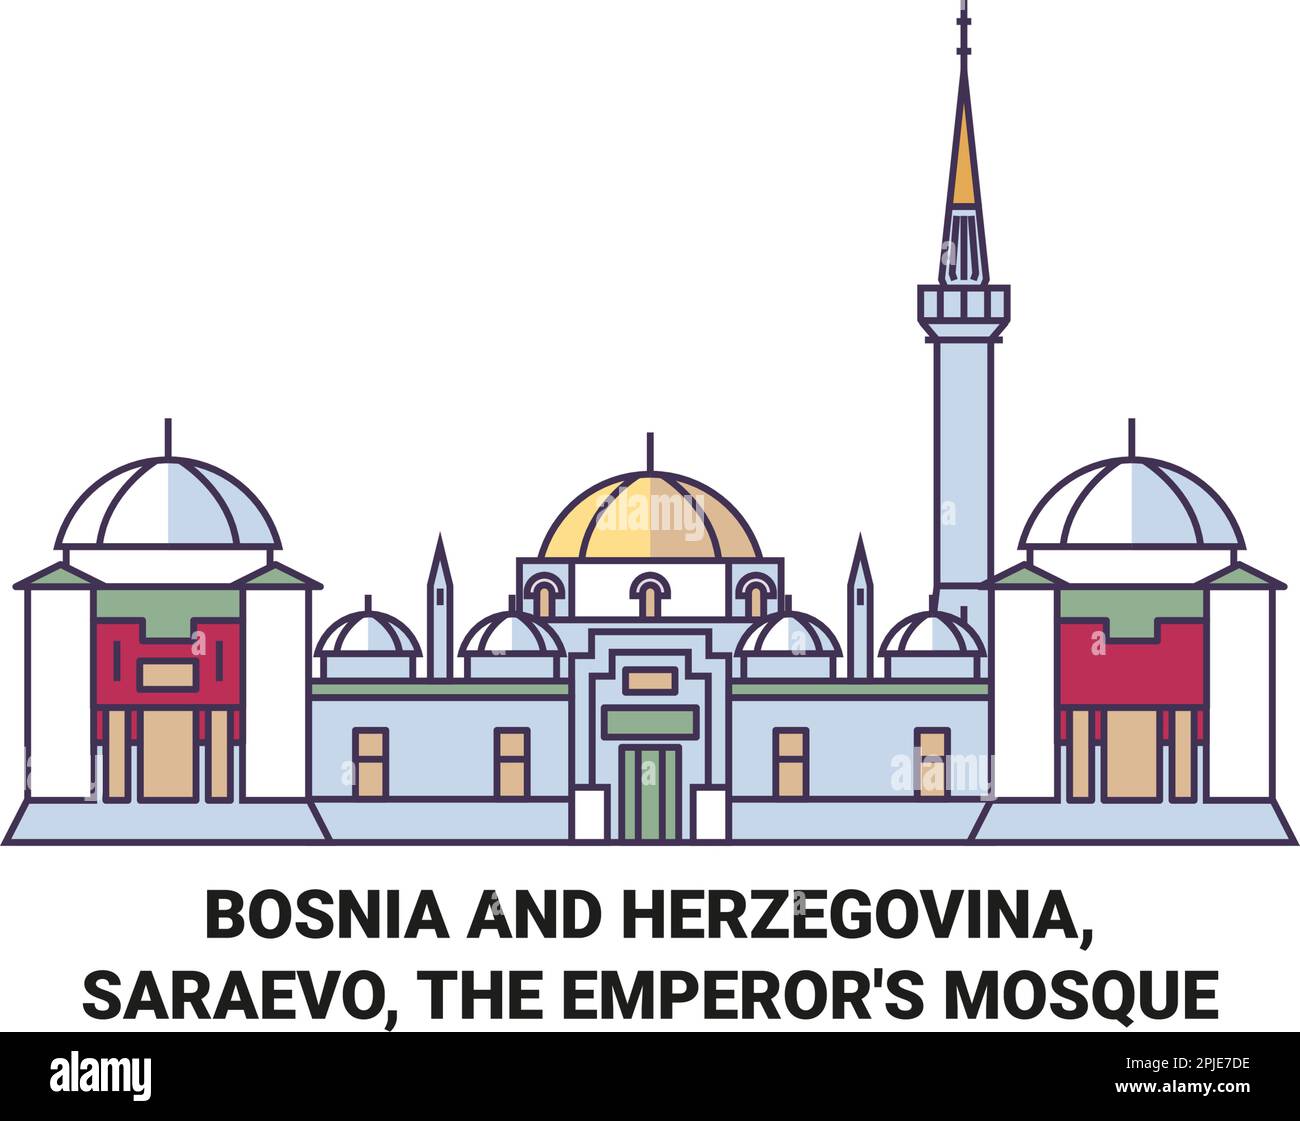 Bosnien und Herzegowina, Saraevo, die Kaisermoschee reisen als Vektorgrafik Stock Vektor